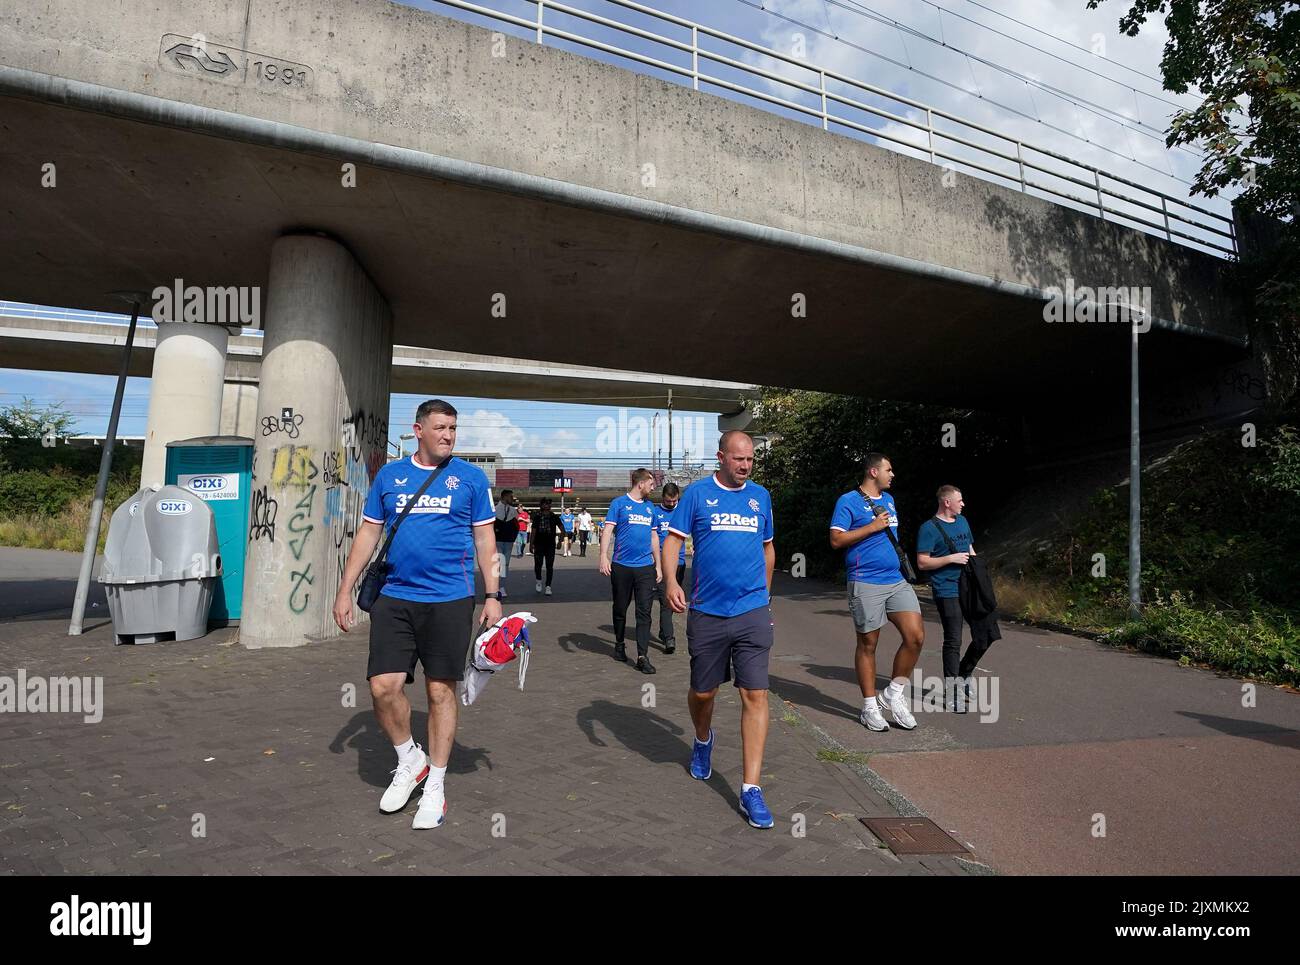 Rangers-Fans machen sich vor dem Spiel der UEFA Champions League Group F in der Johan Cruyff Arena in Amsterdam, Niederlande, auf den Weg. Bilddatum: Mittwoch, 7. September 2022. Stockfoto